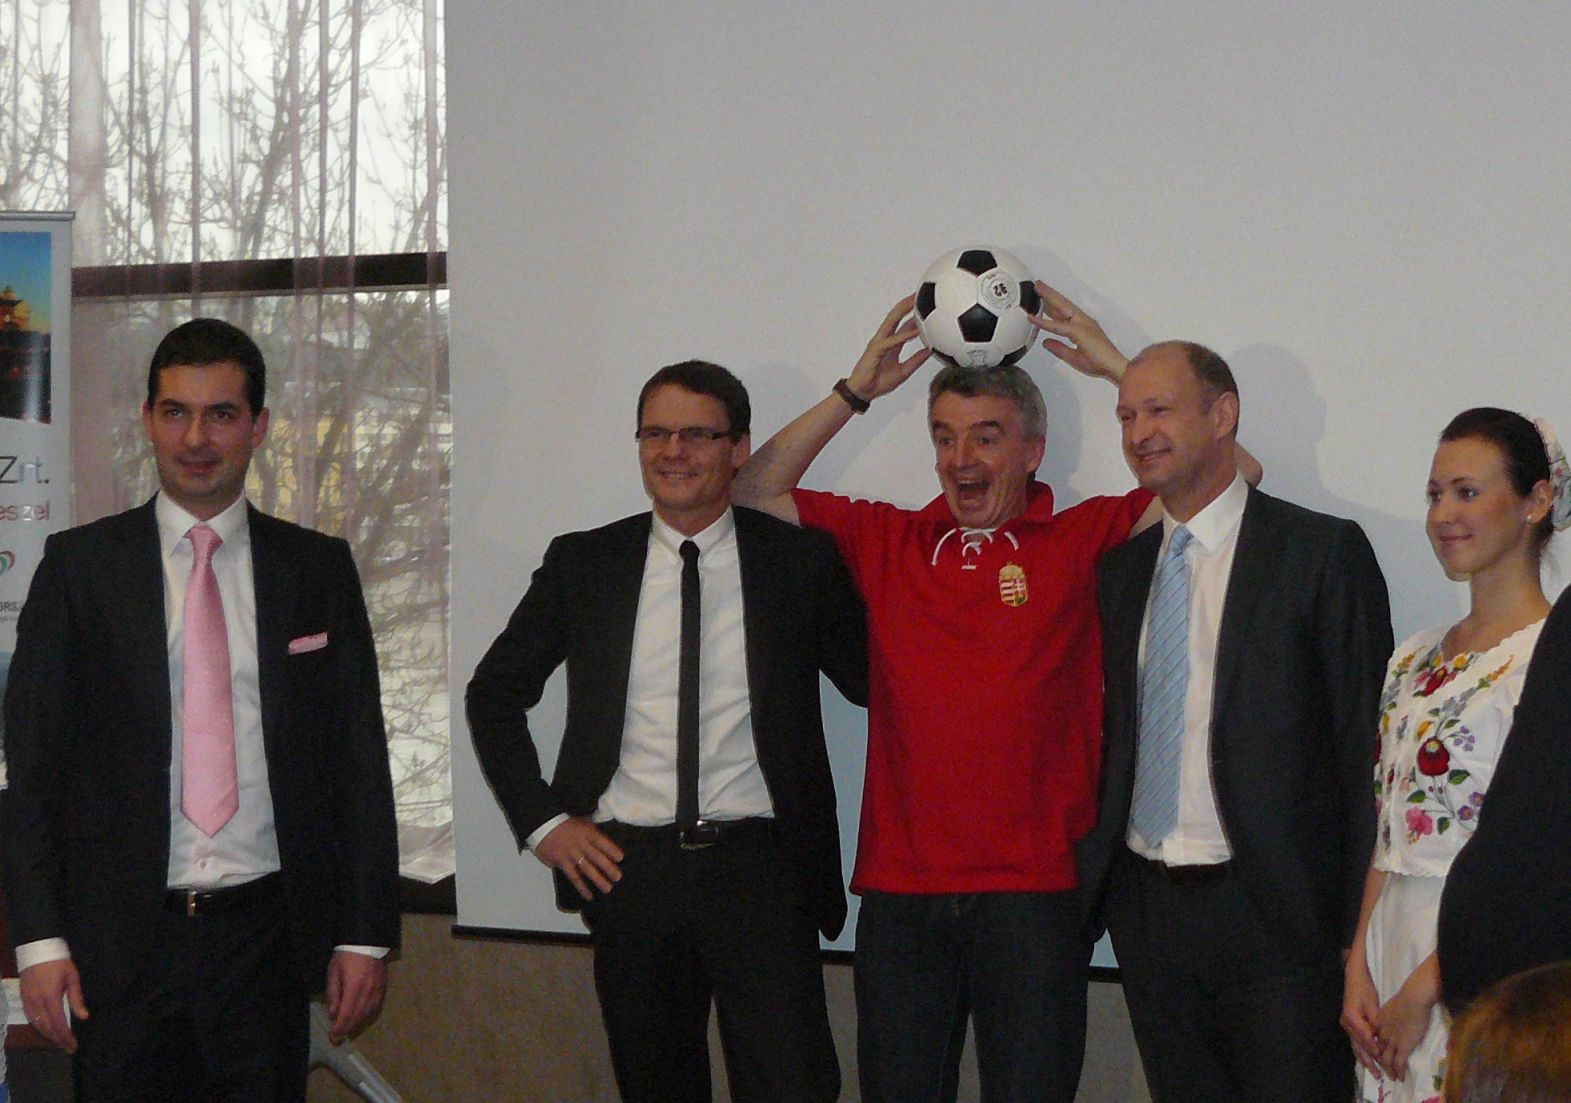 Balról jobbra: Horváth Gergely, Bánki Erik, Michael O'Leary, Jost Lammers 